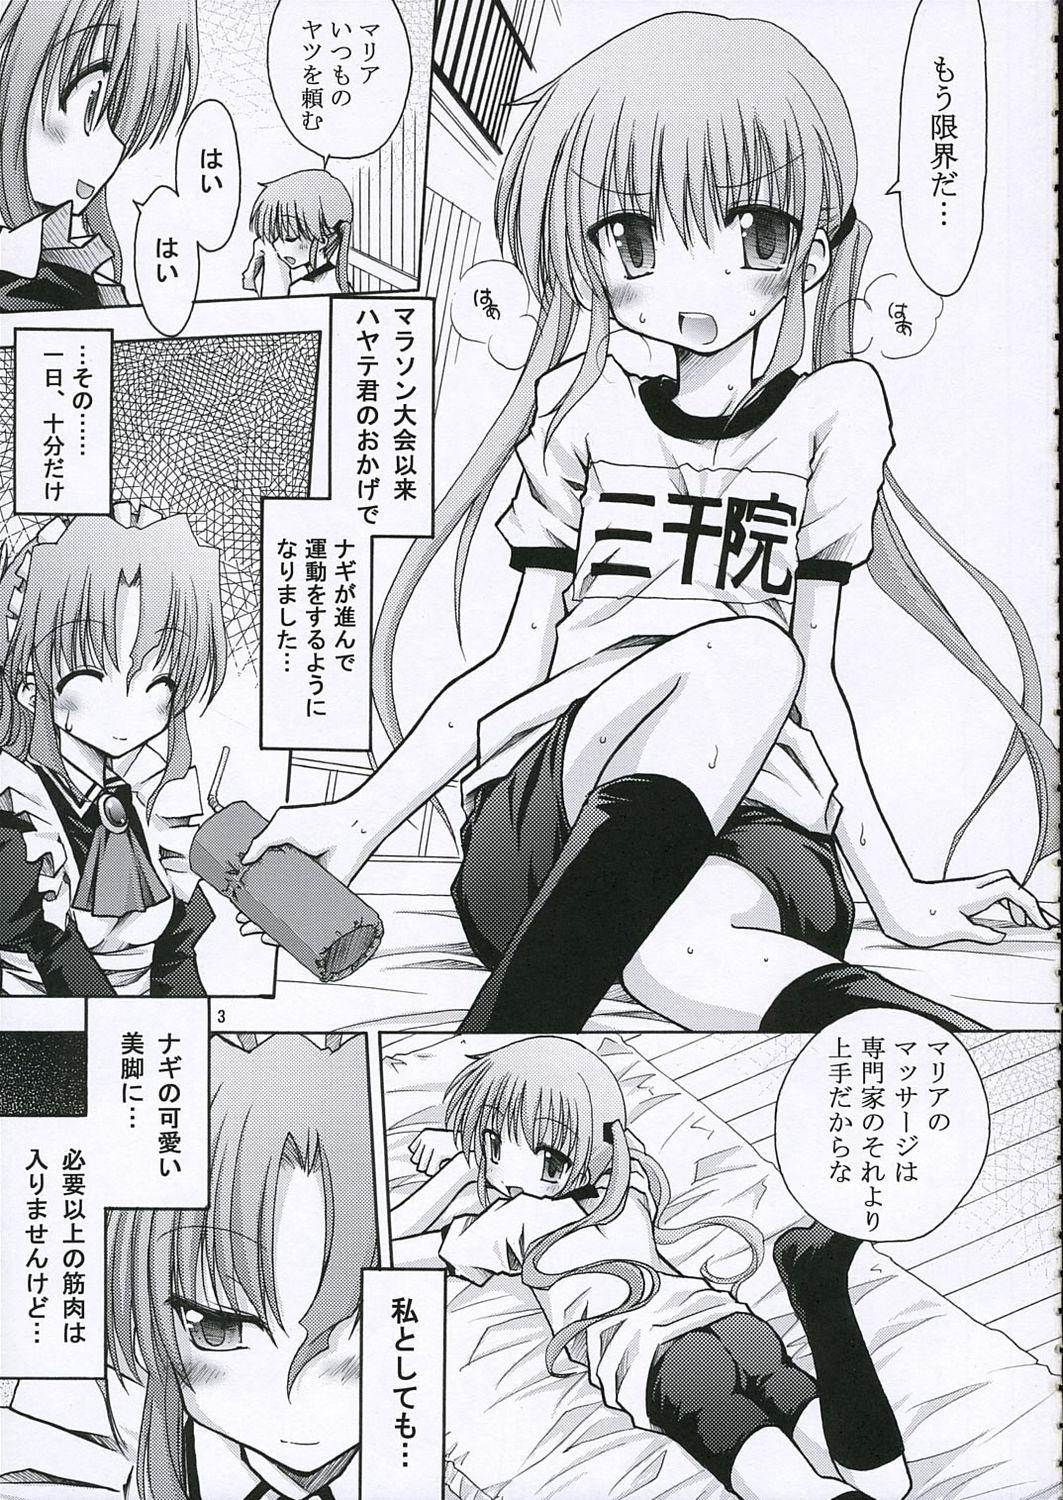 Plug Maria-san no Gotoku! - Hayate no gotoku Internal - Page 4